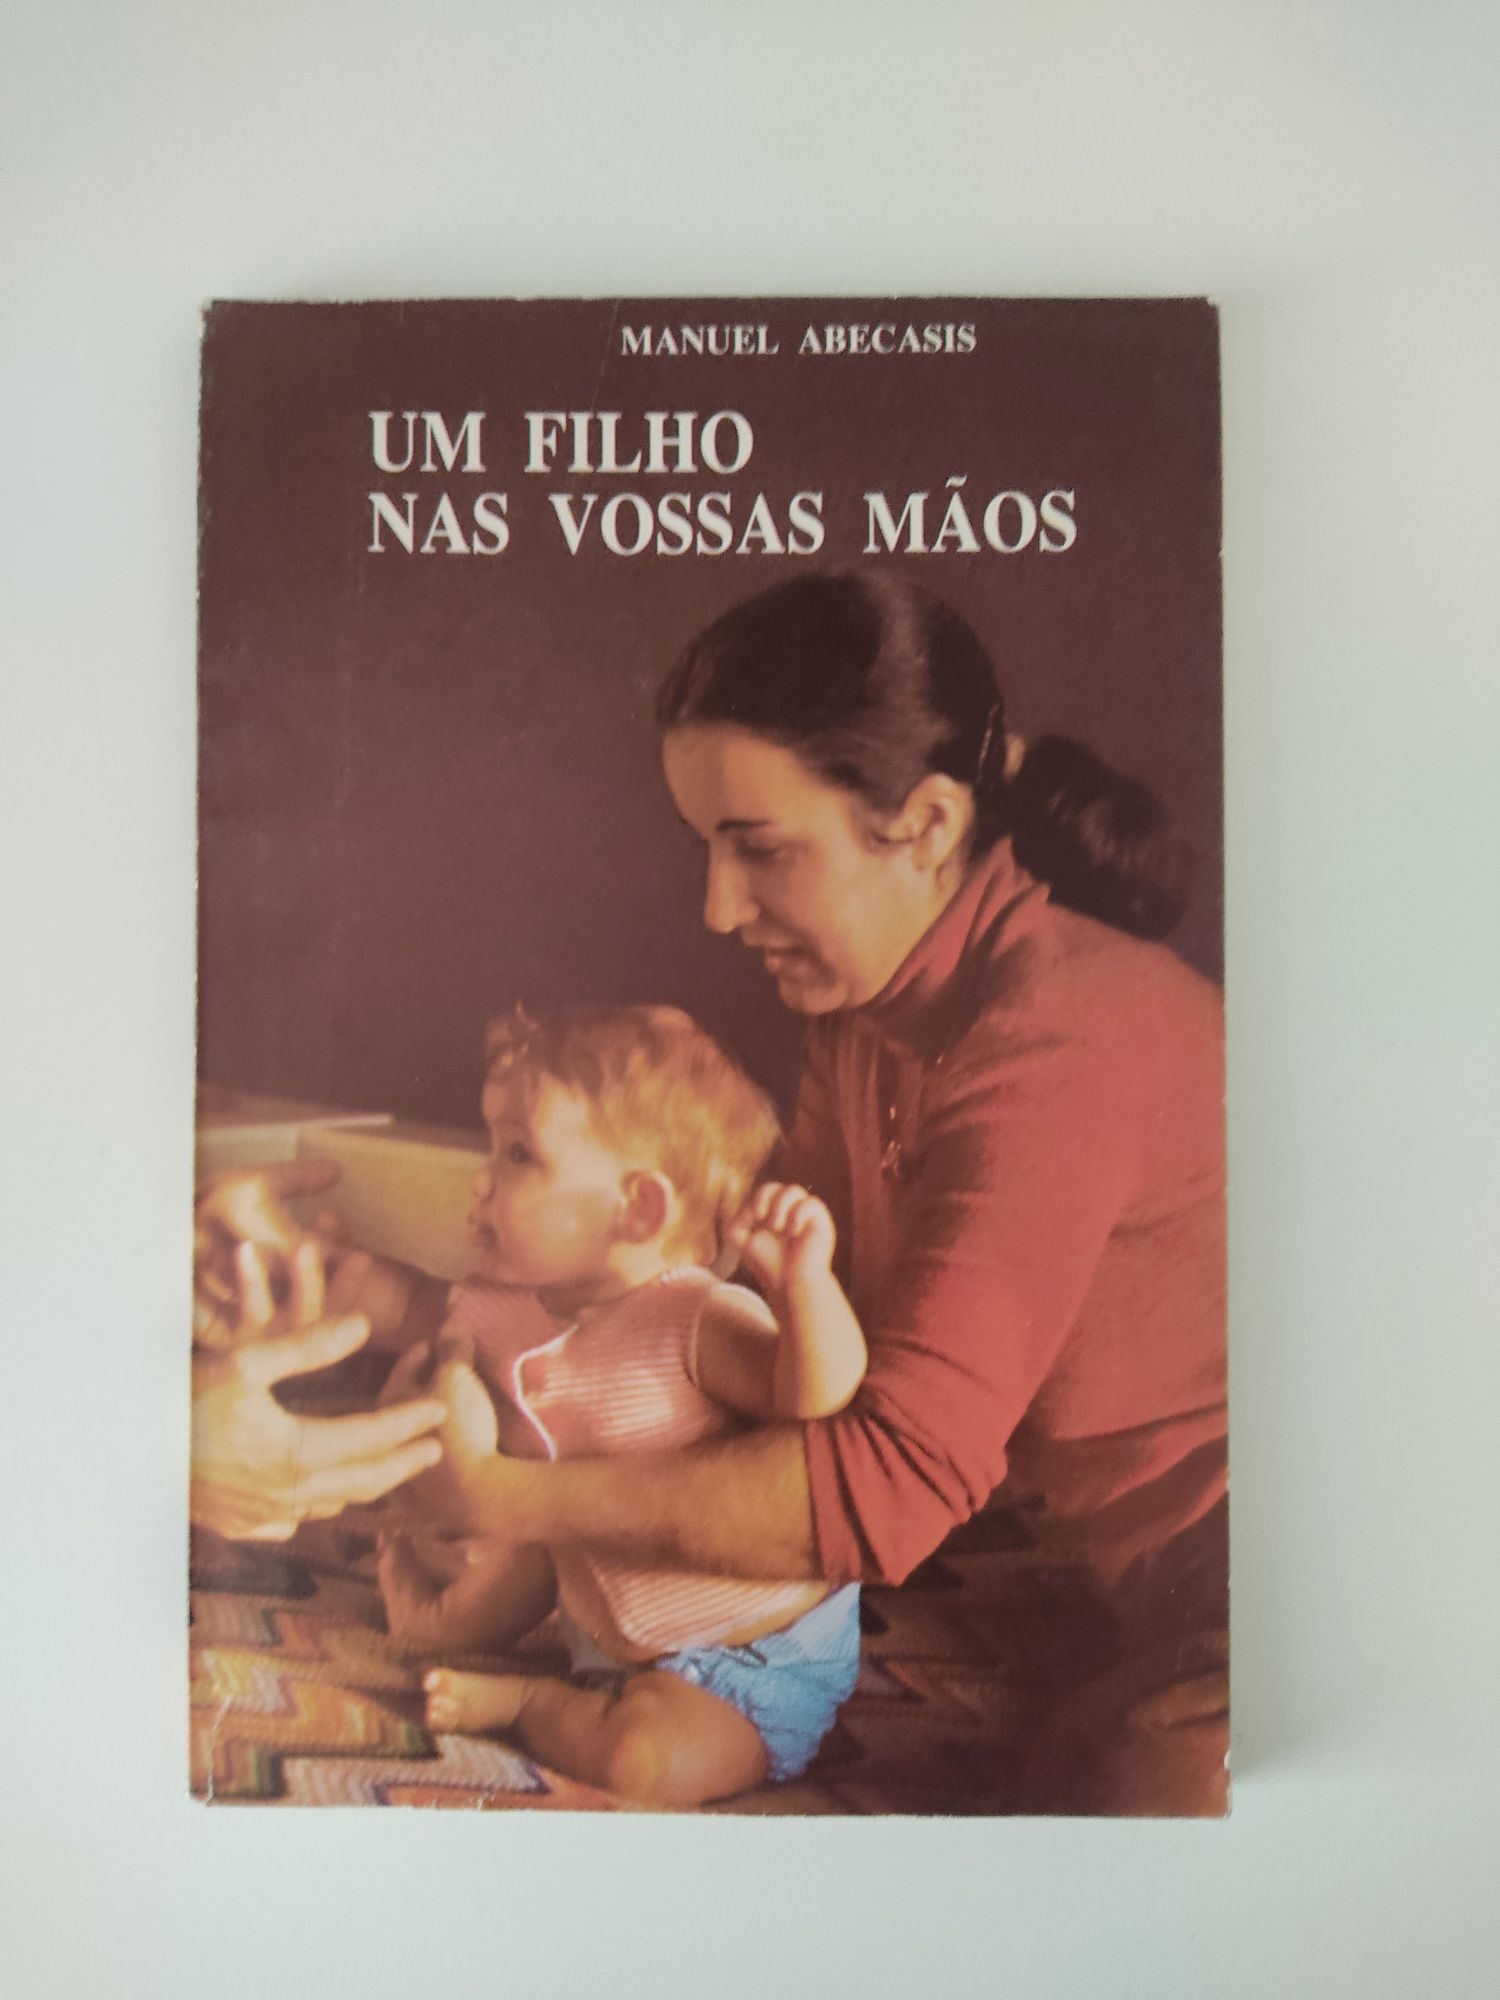 Livro "Um filho nas nossas mãos" de Manuel Abecacis